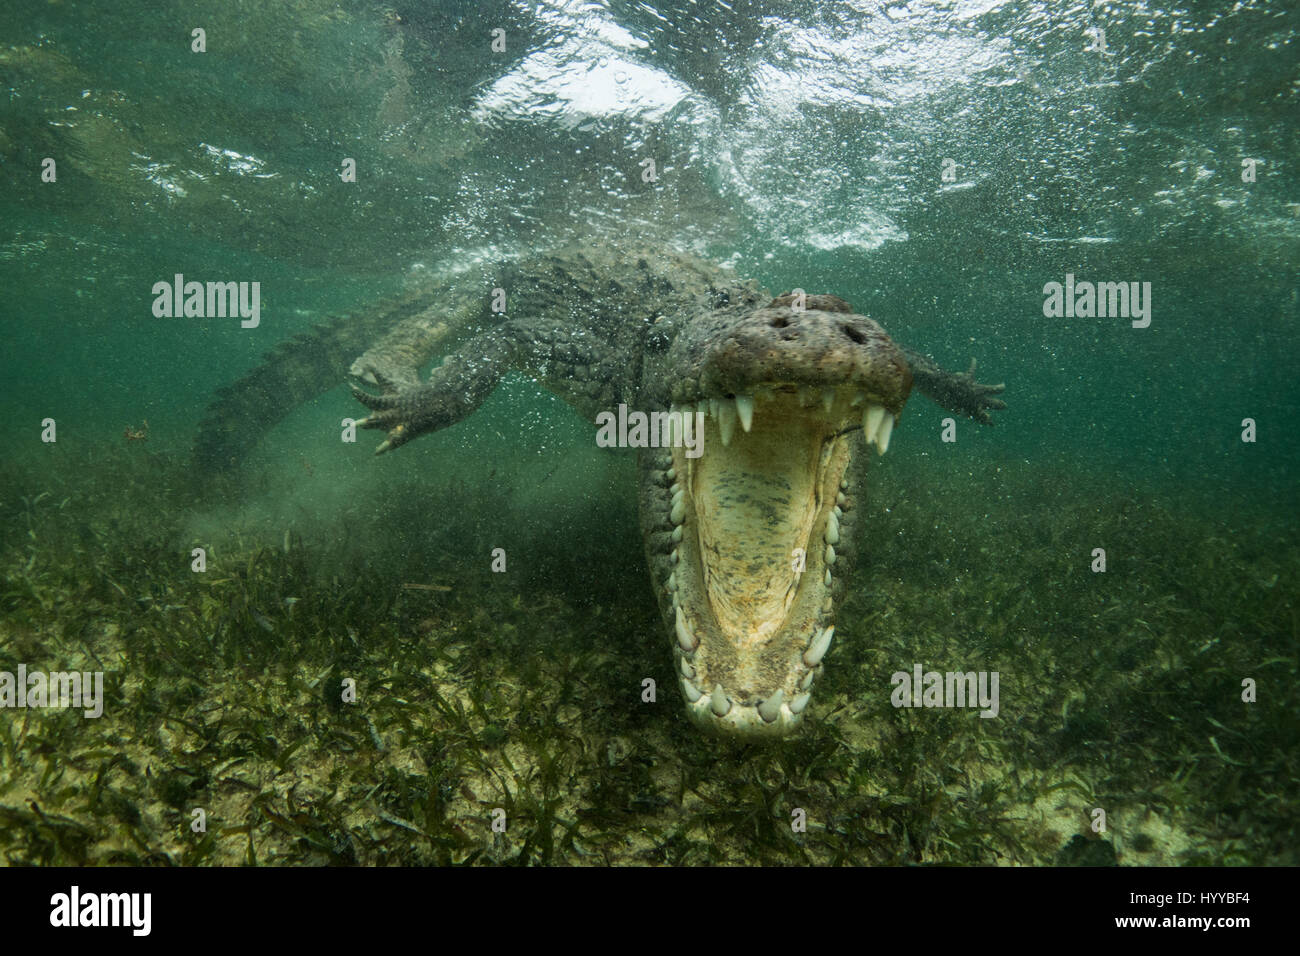 XCALAK, Mexiko: Atemberaubende Unterwasseraufnahmen zeigen einen britischen Mann näher rücken tingingly potenziell tödliche amerikanische Krokodile. Diese unglaublichen Aufnahmen wurden unter Wasser gefangen auf Seegras "Sweet-Spot" - flach genug für Krokodile, zu stehen und einen kurzen Atem während tief genug, um ahnungslose Beute zu fangen. Berkshire-Naturfotograf Chris Knight, trat diese Krokodile unter Wasser und wartet auf den ersten Bissen. Stockfoto